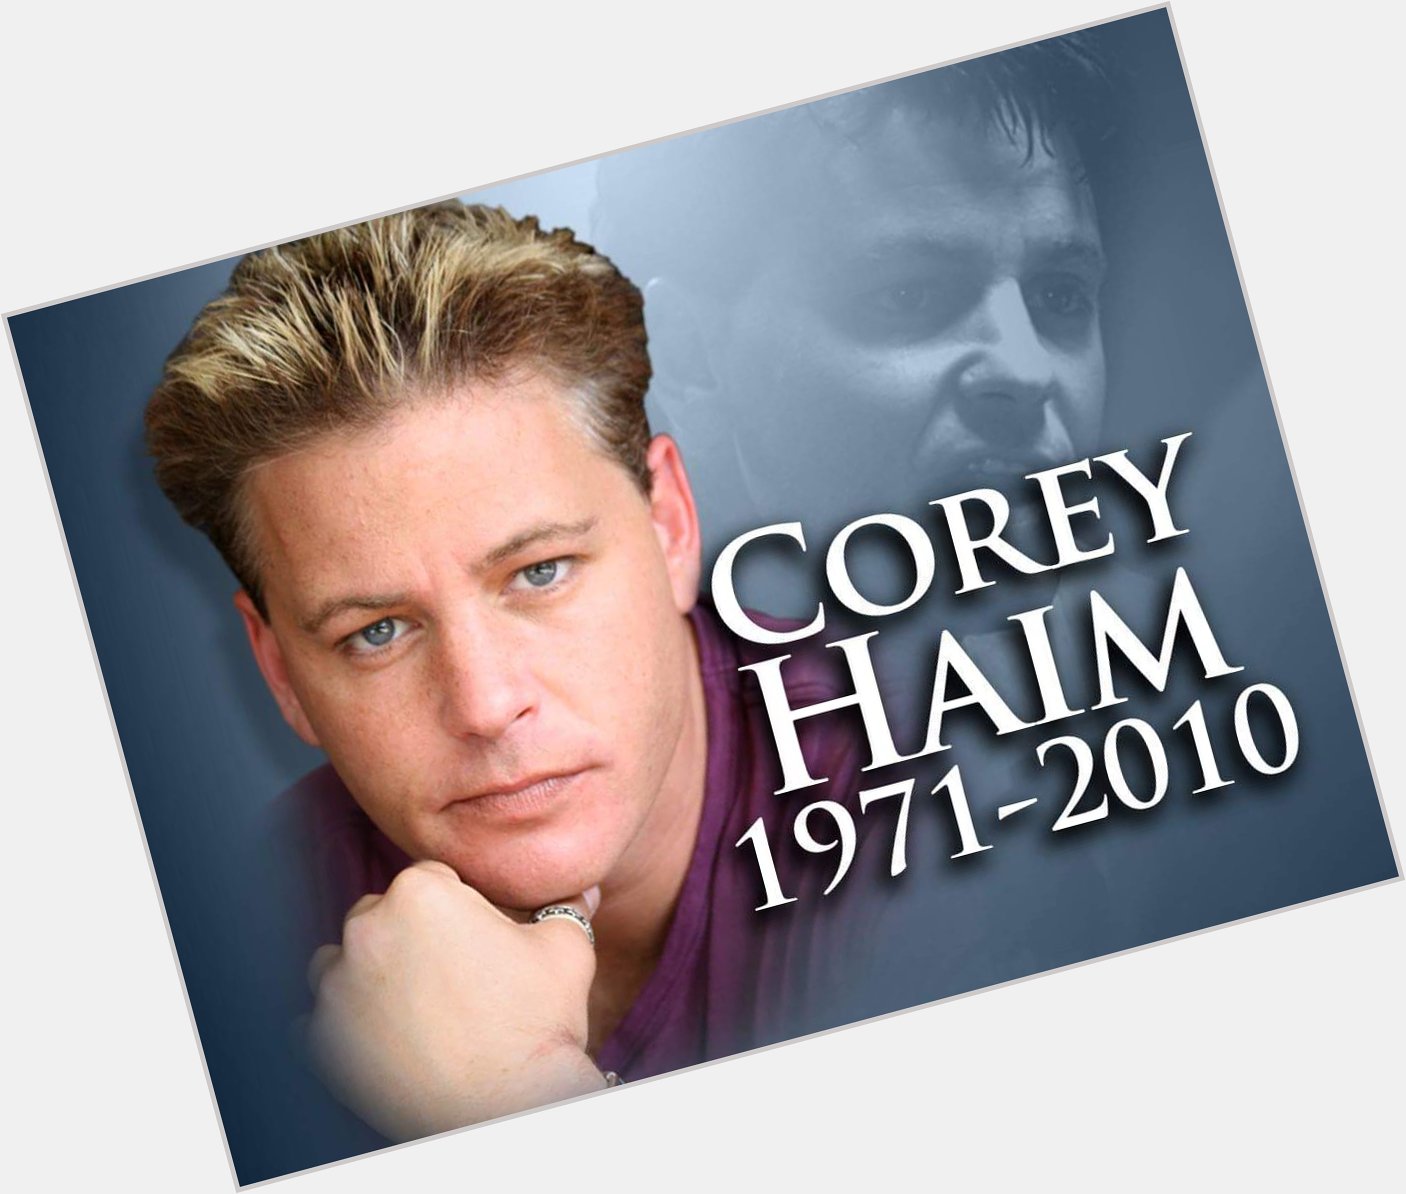 Happy birthday Corey Haim 